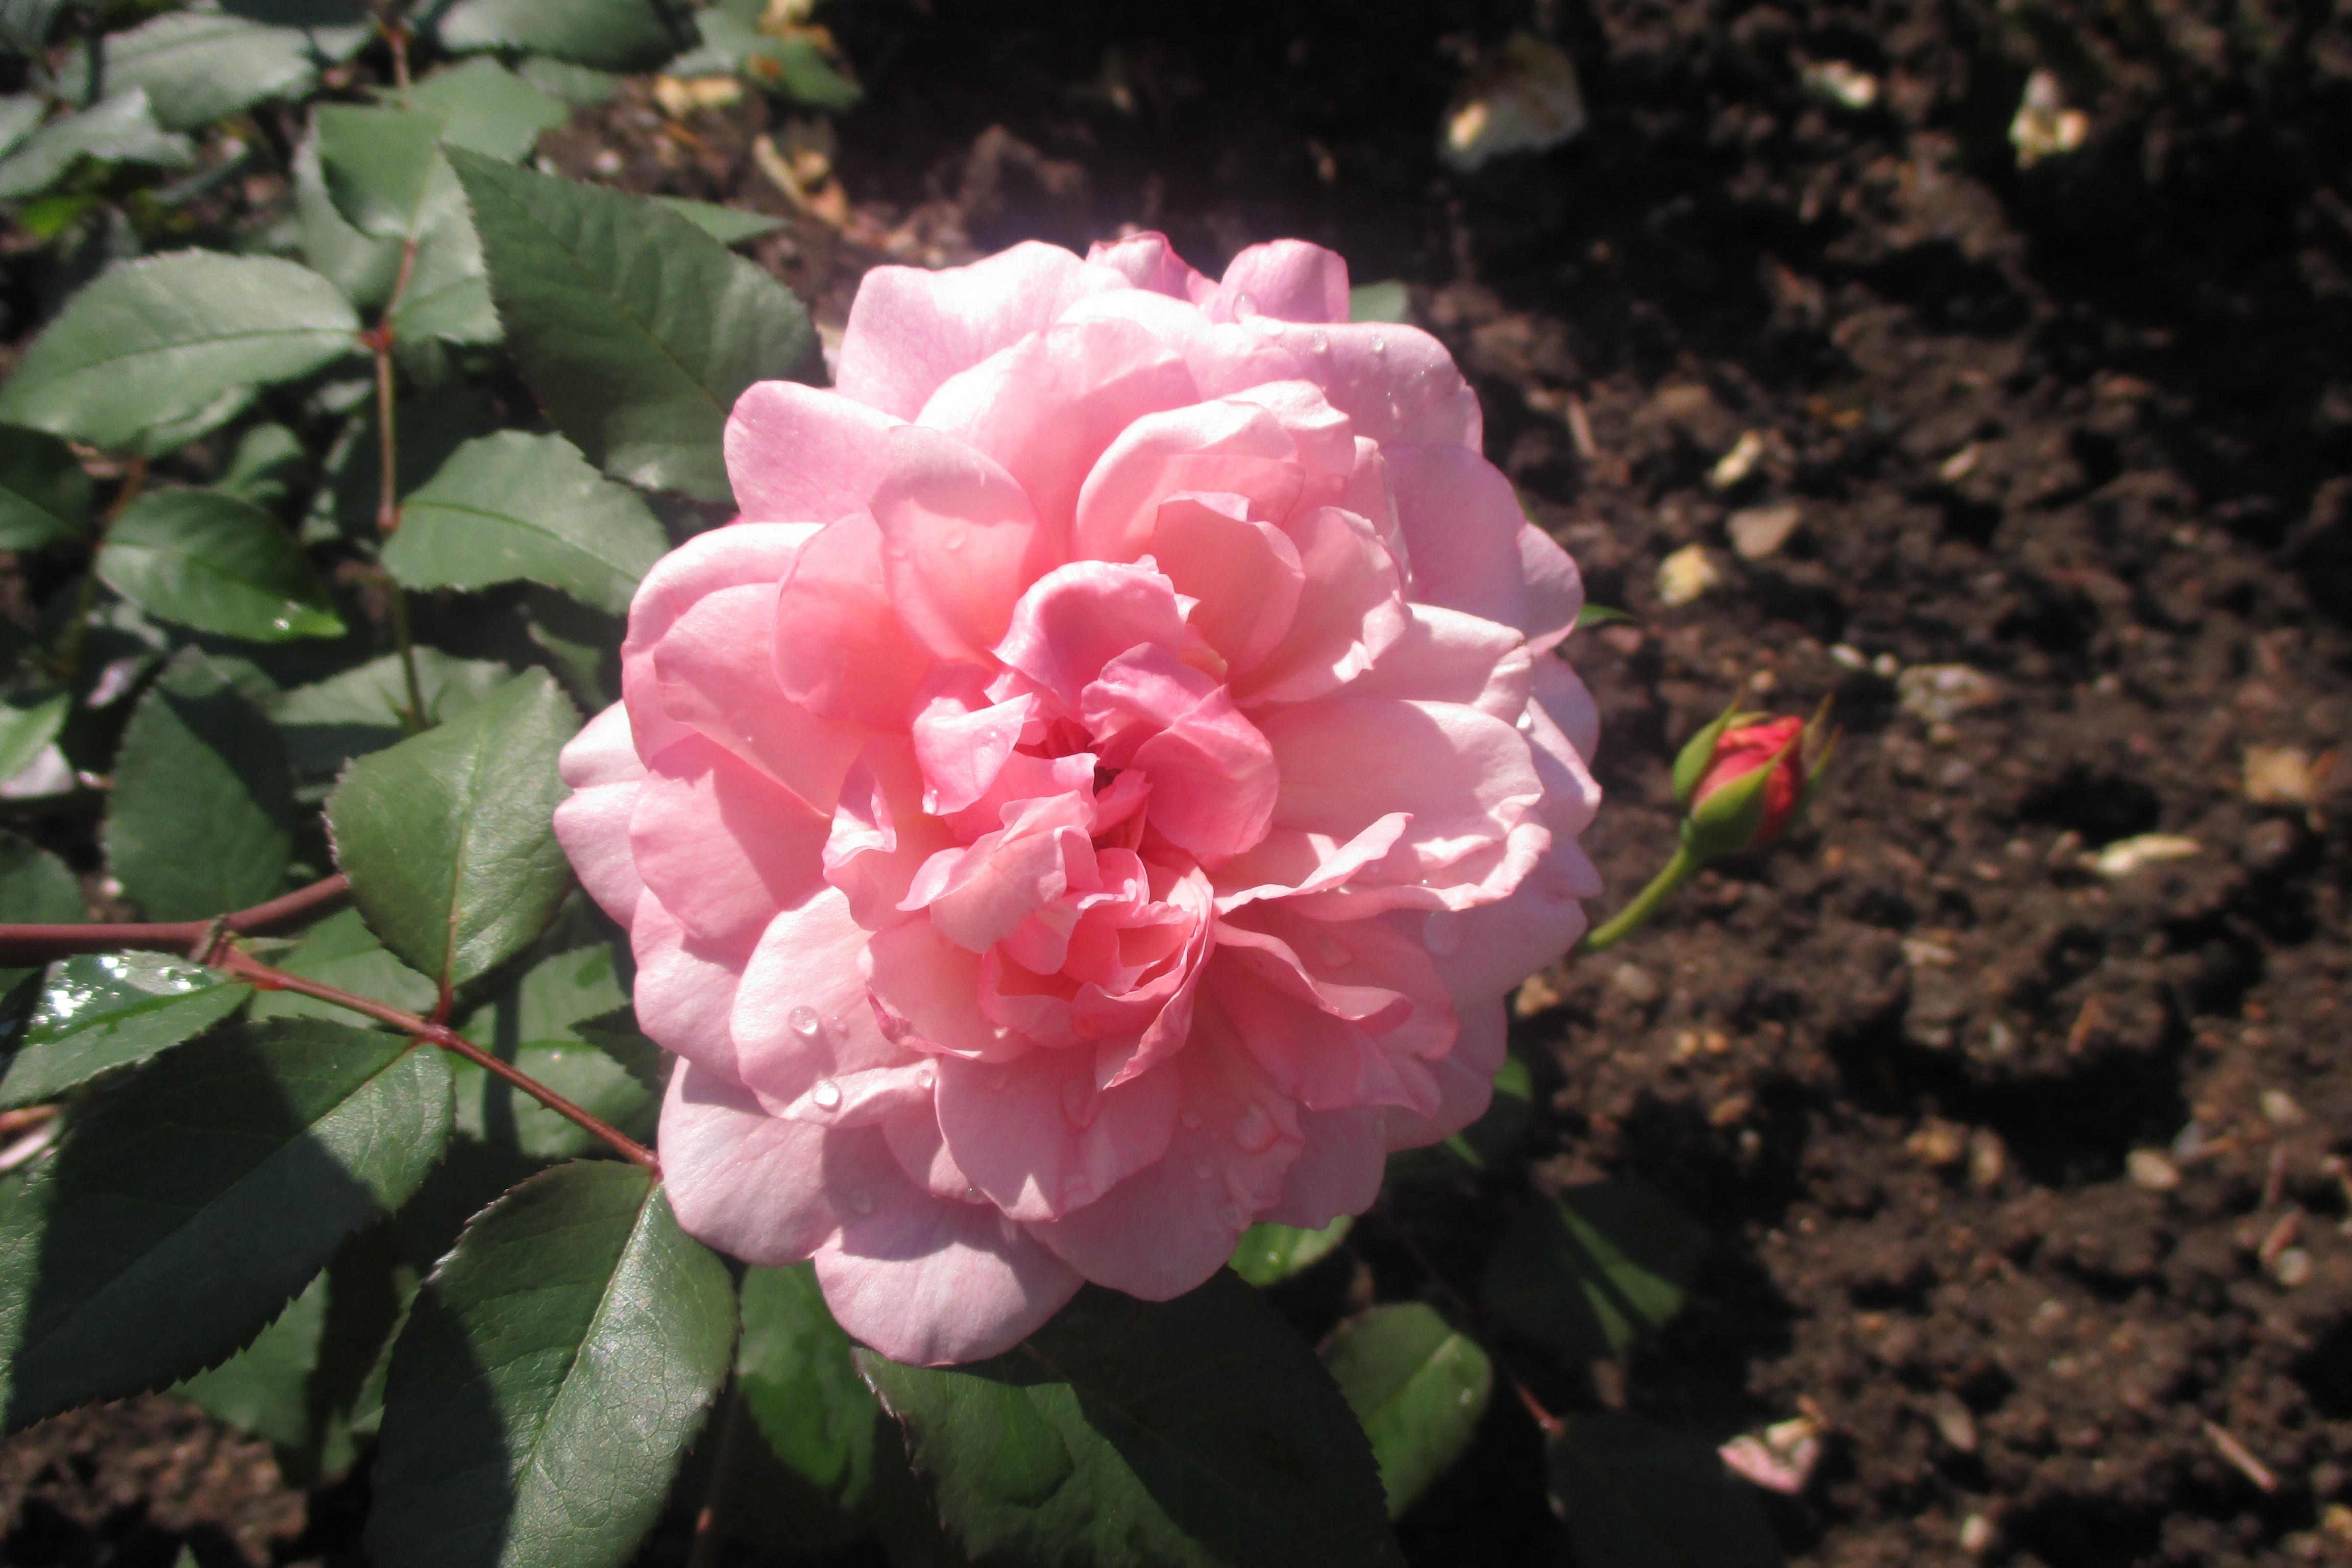 pink bloomed rose flower